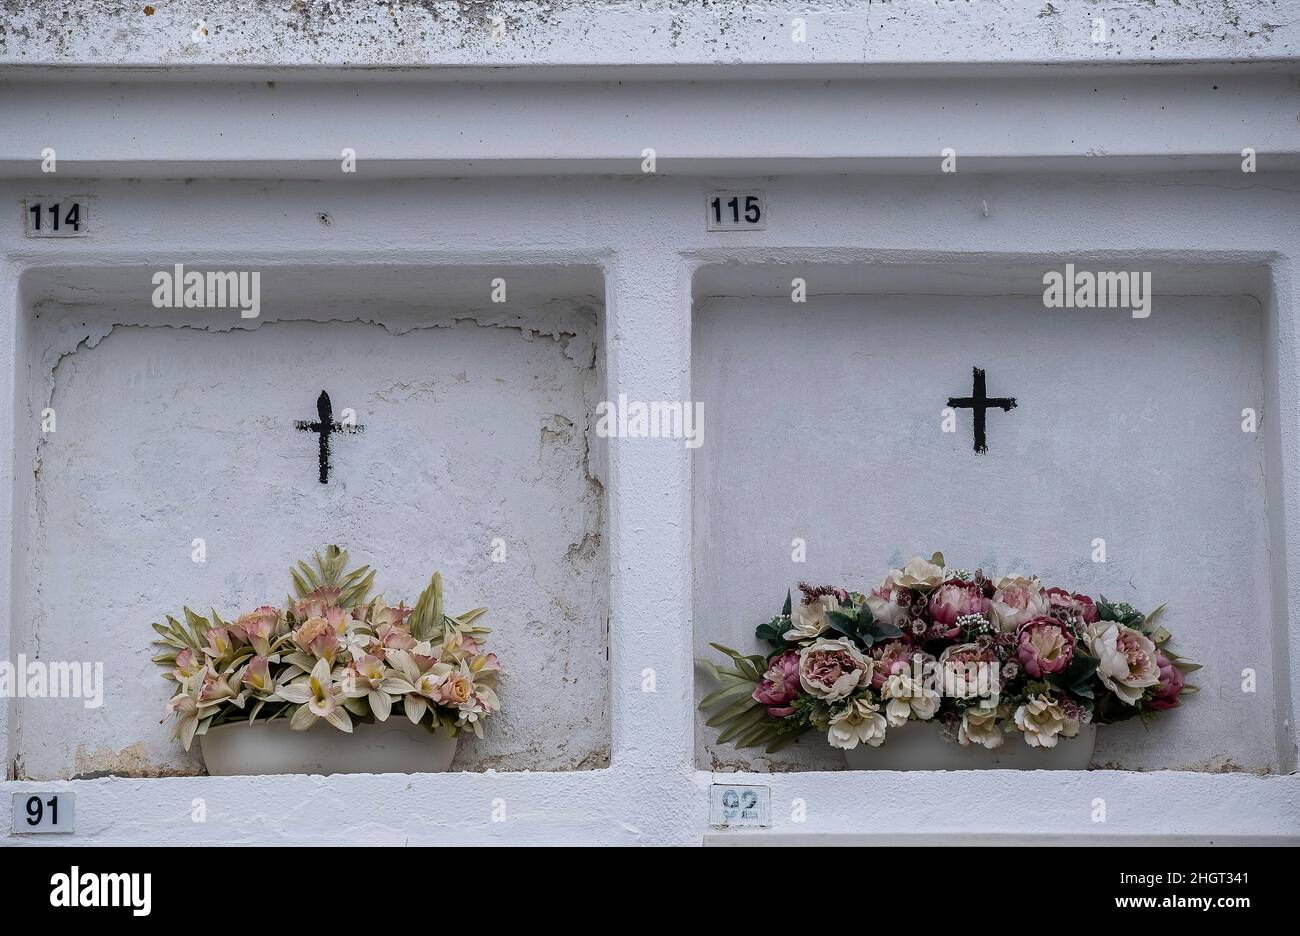 Los migrantes no identificados se ahogaron en el Mediterráneo tratando de cruzar el Estrecho de Gibraltar. Enterrado 11/10/02. Cementerio, Barbate, Cádiz, España Foto de stock